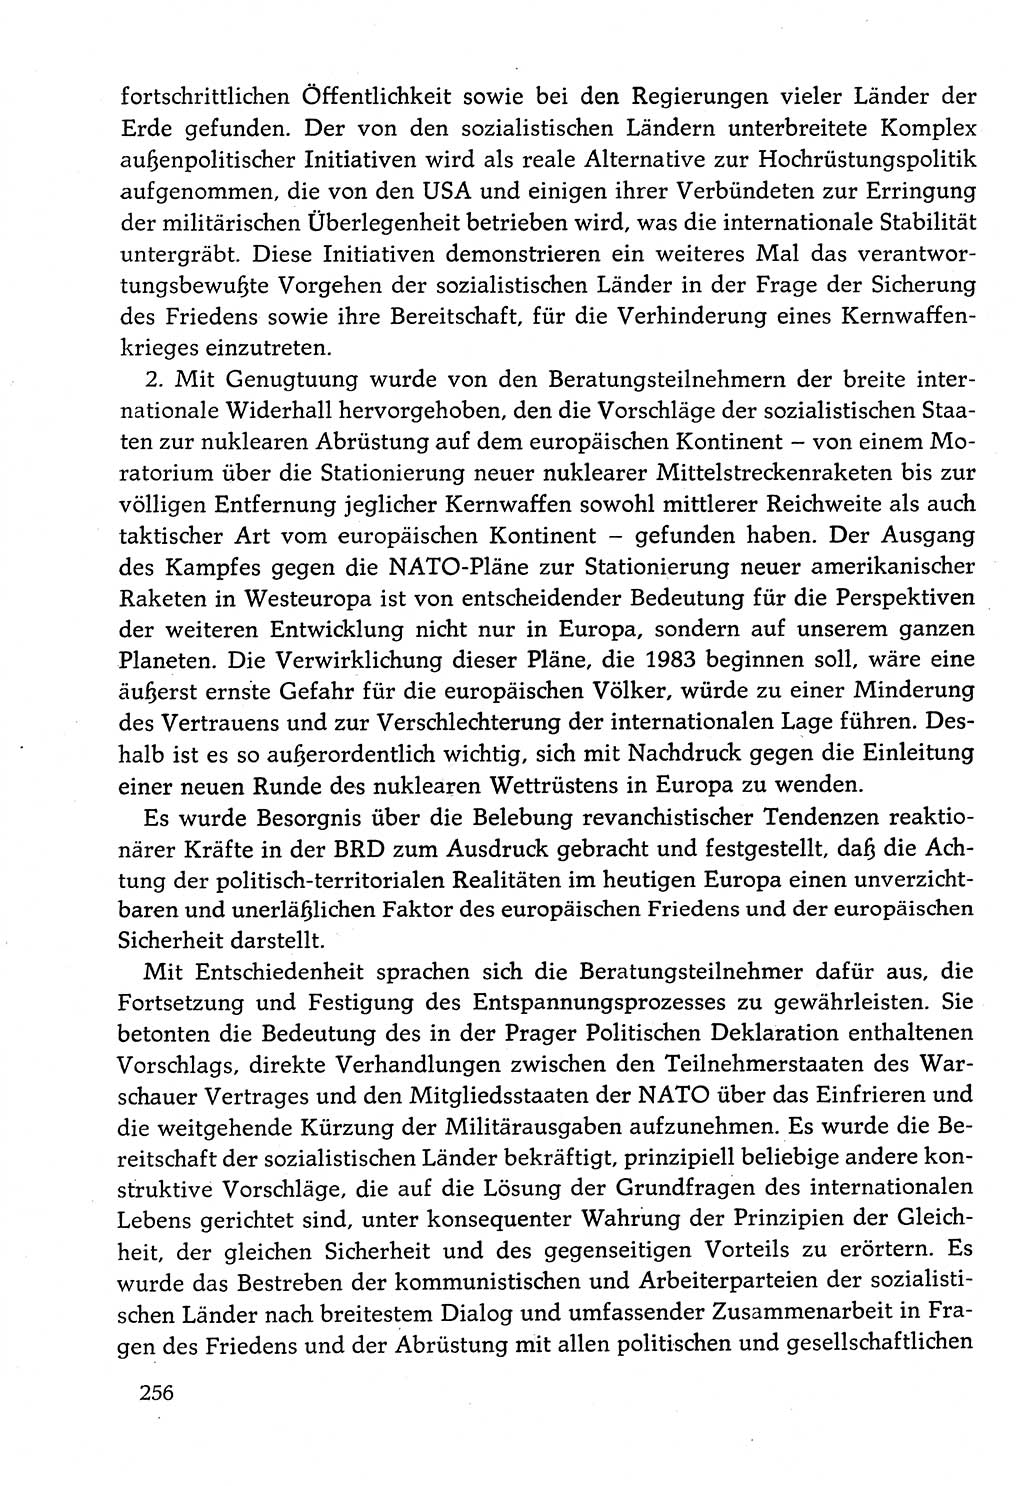 Dokumente der Sozialistischen Einheitspartei Deutschlands (SED) [Deutsche Demokratische Republik (DDR)] 1982-1983, Seite 256 (Dok. SED DDR 1982-1983, S. 256)